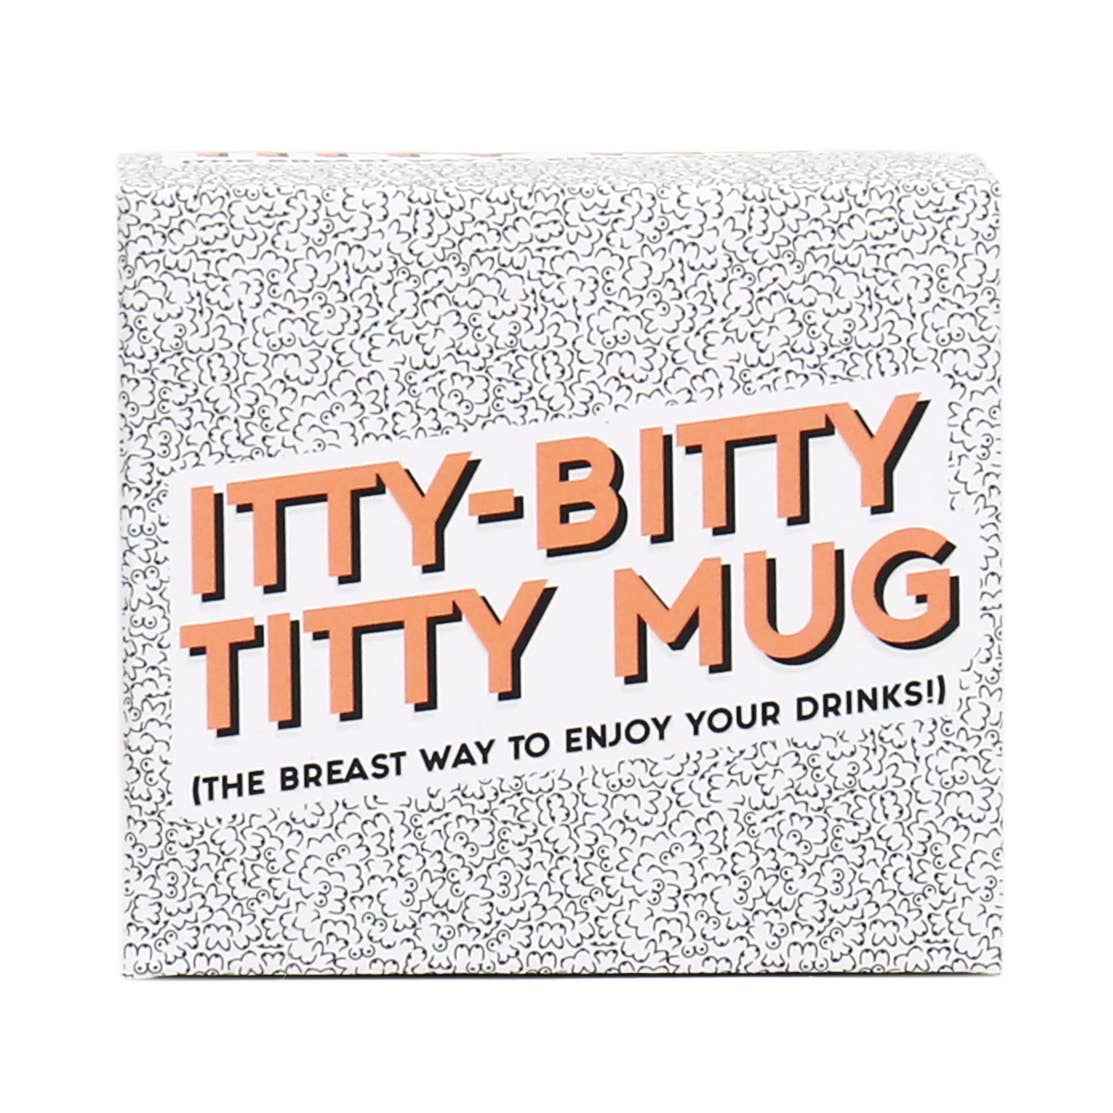 Itty Bitty Titty Mug